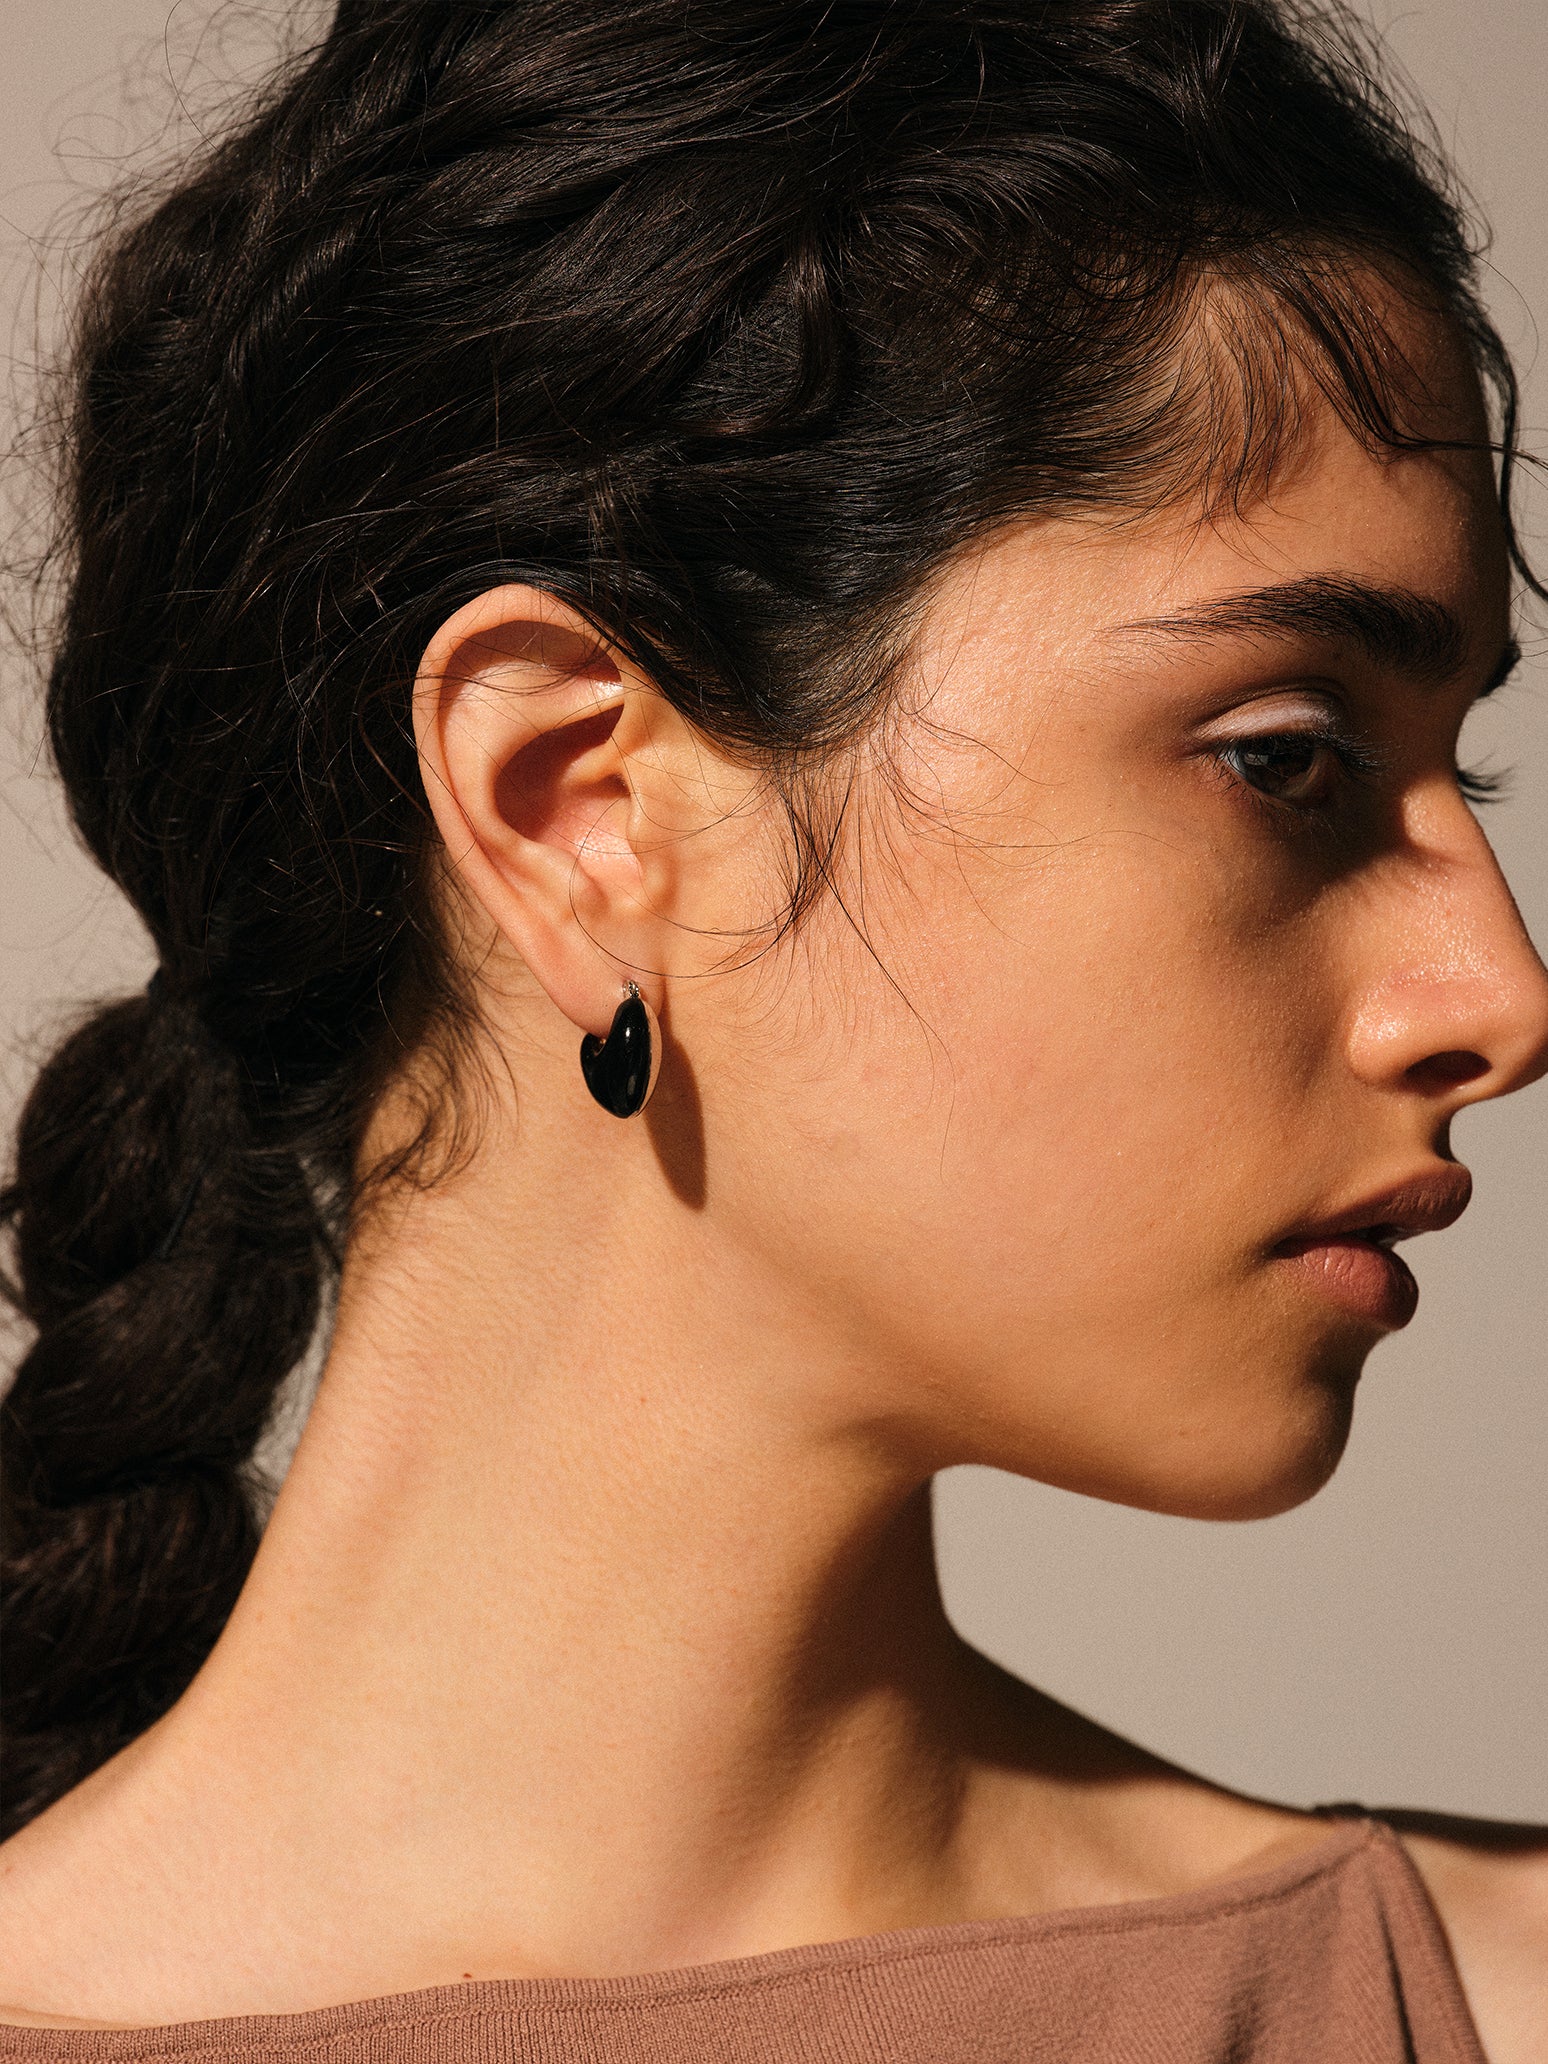 Resin Plump Hoop Earrings (pair) – ucalypt